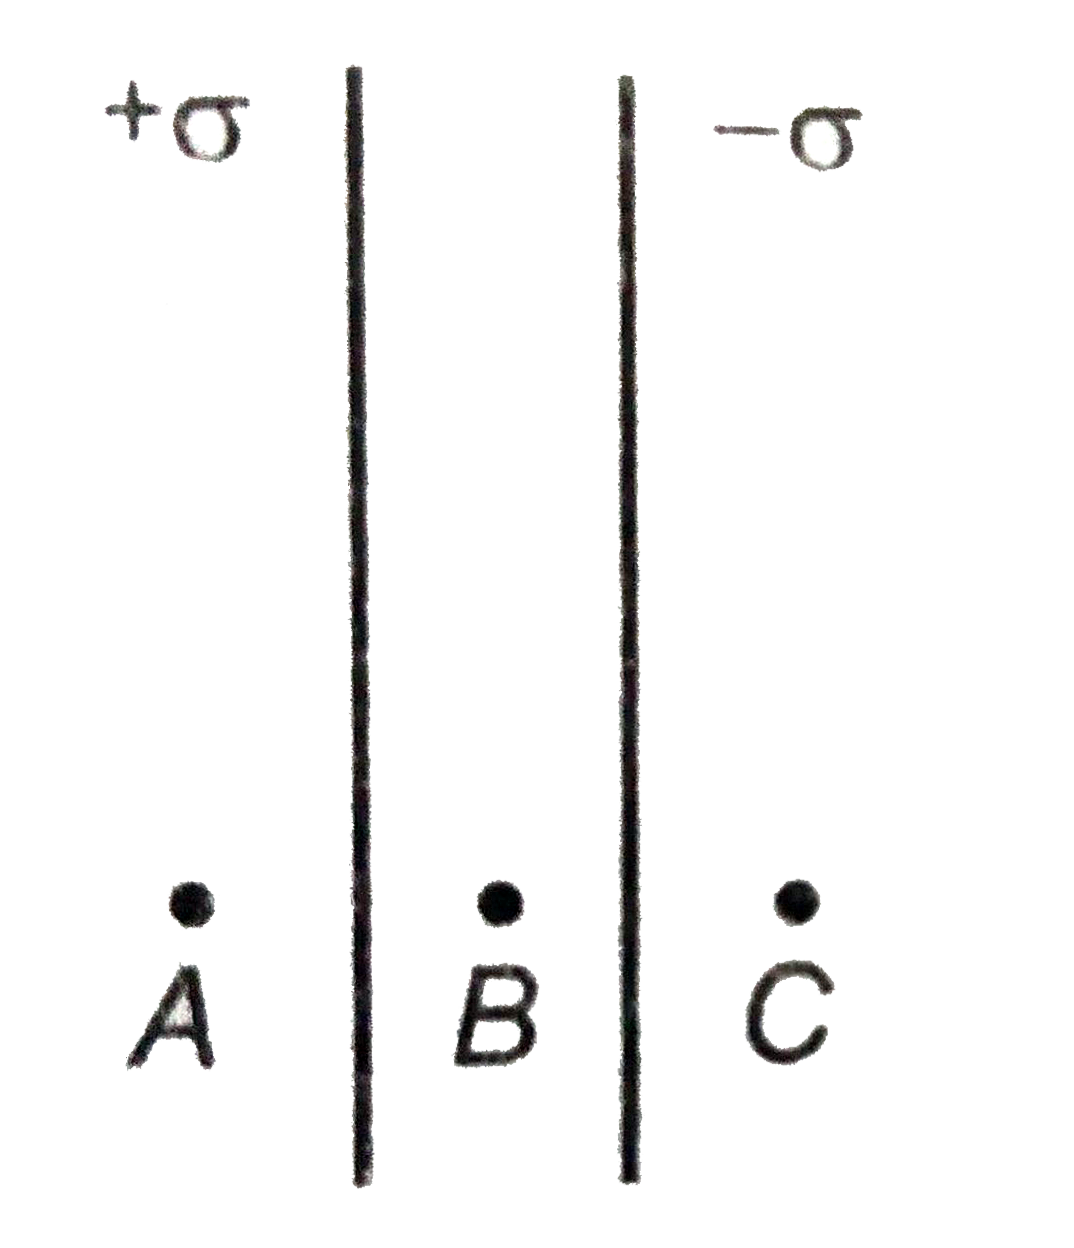 चित्र में, अनंत लम्बाई की दो समांतर प्लेट एकसमान रूप से आवेशित है तथा उन पर आवेश के पृष्ठ घनत्व +sigma व् -sigma है। वैधुत क्षेत्र की तीव्रता शून्य होगी-